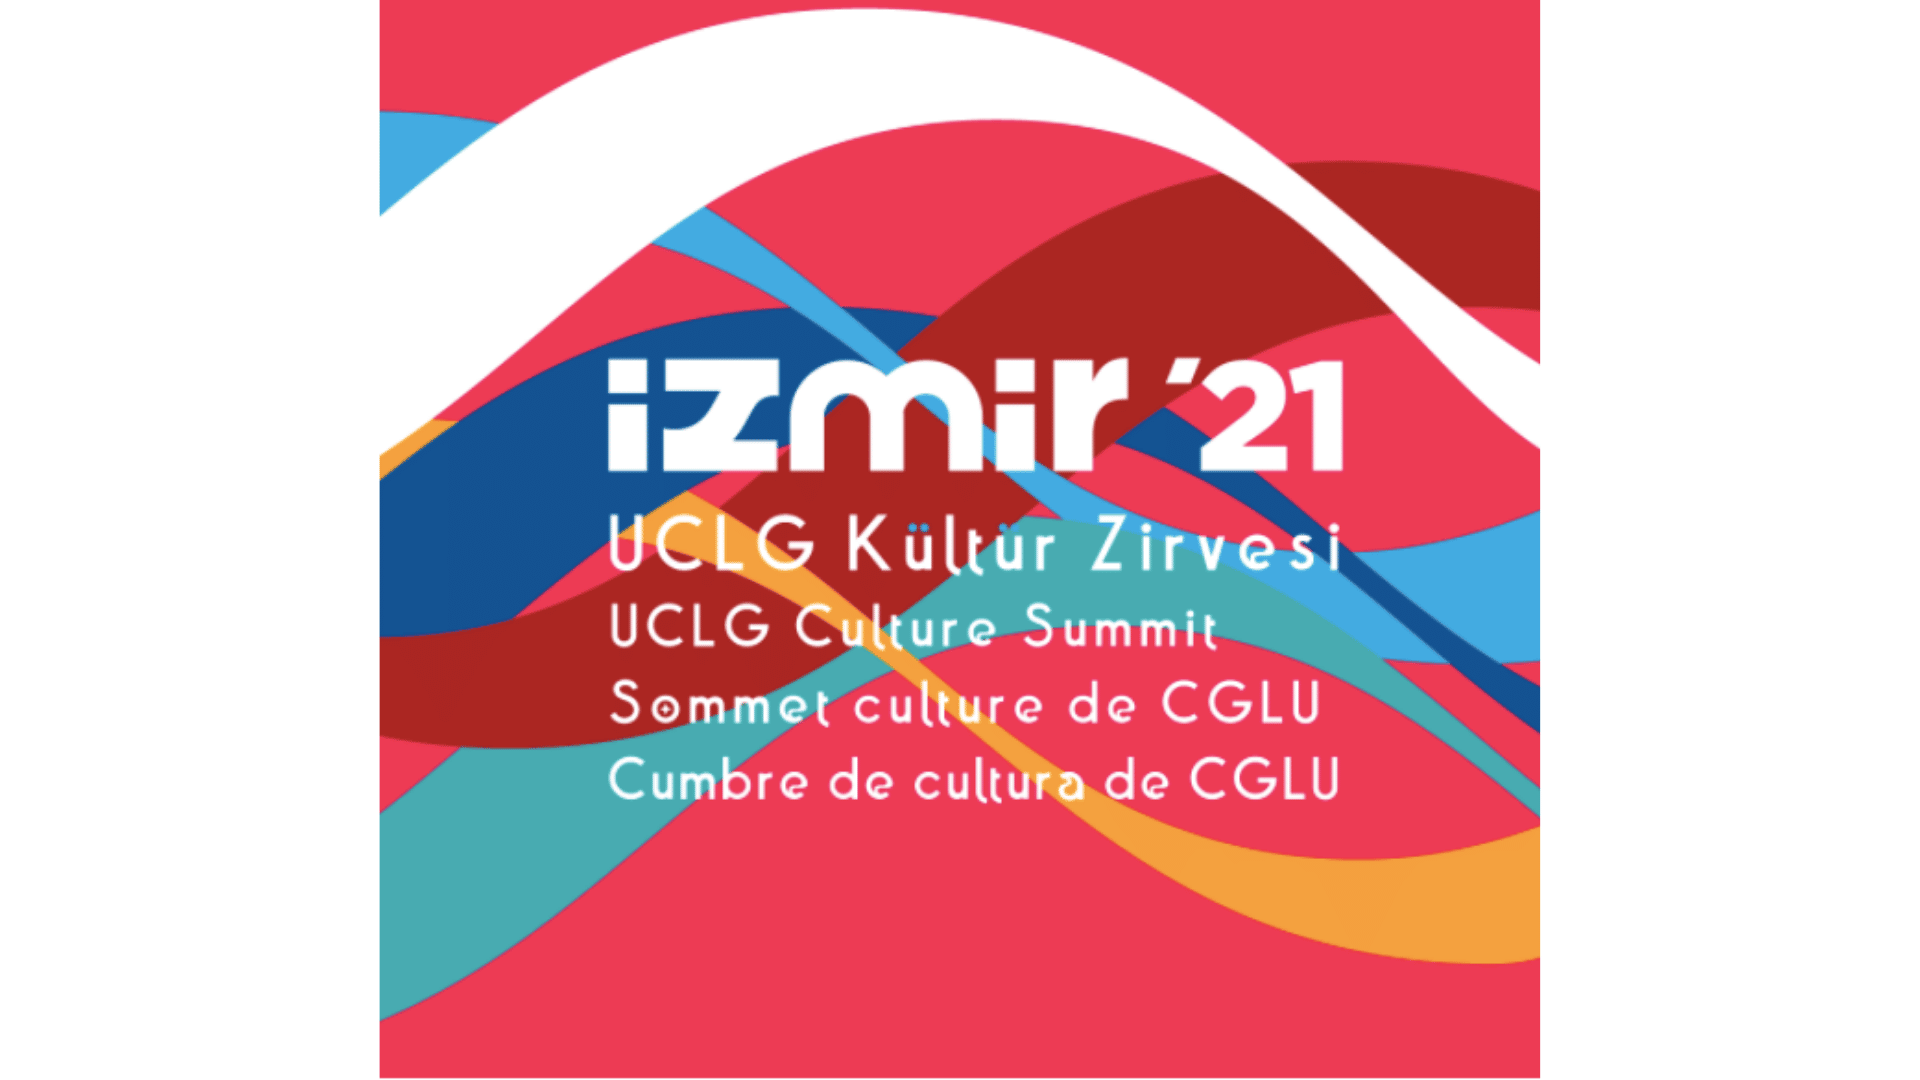 Logo des 4. UCLG-Kulturgipfels, der im September 2021 von Izmir veranstaltet wird